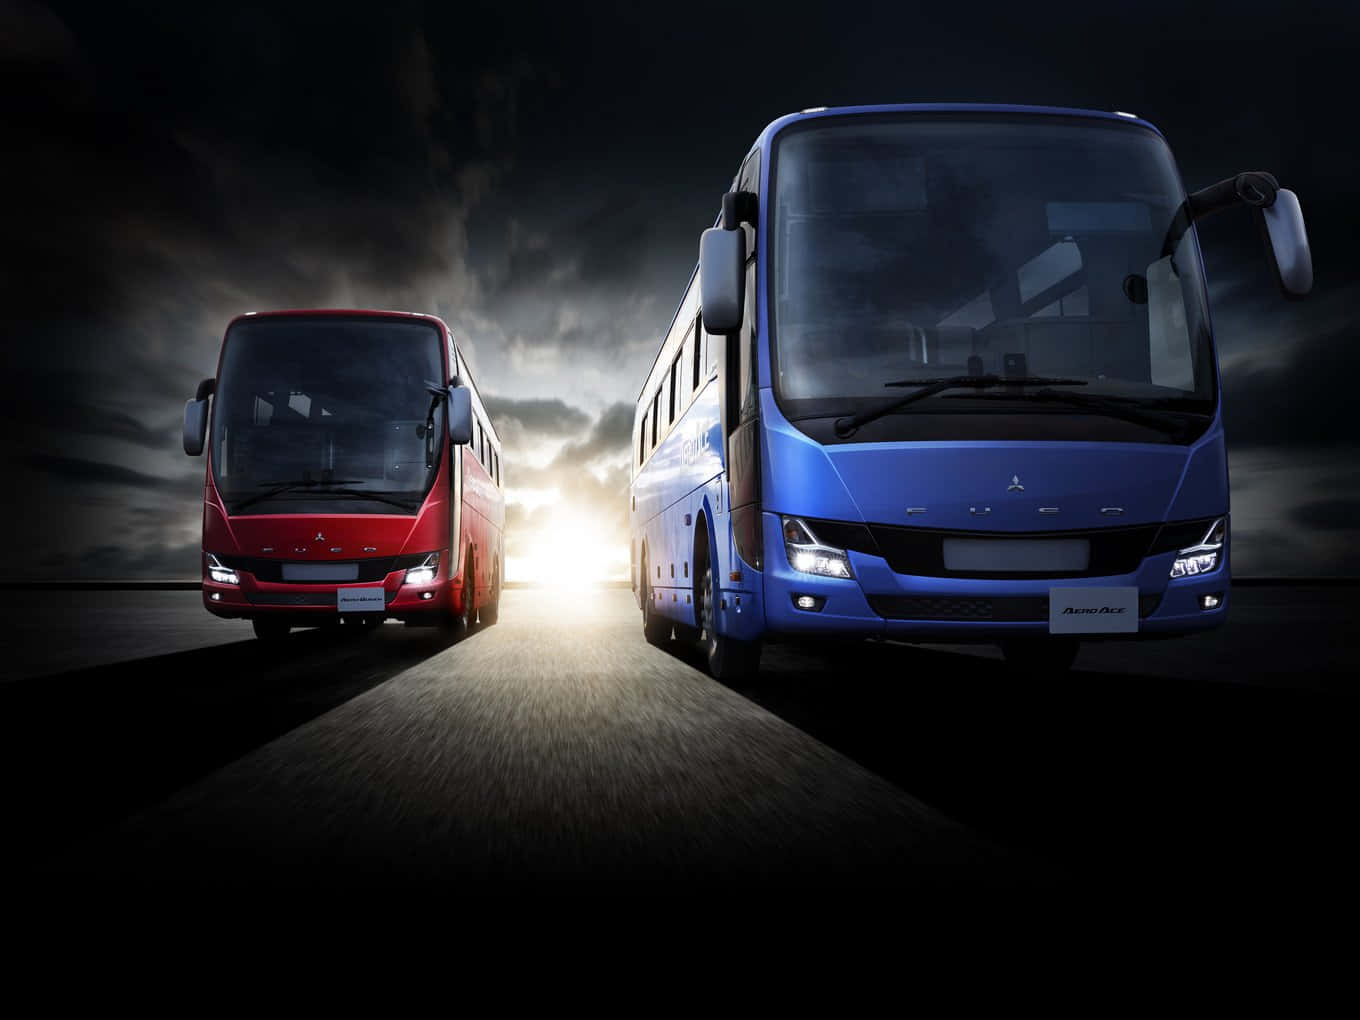 Blaue& Rote Busbilder.